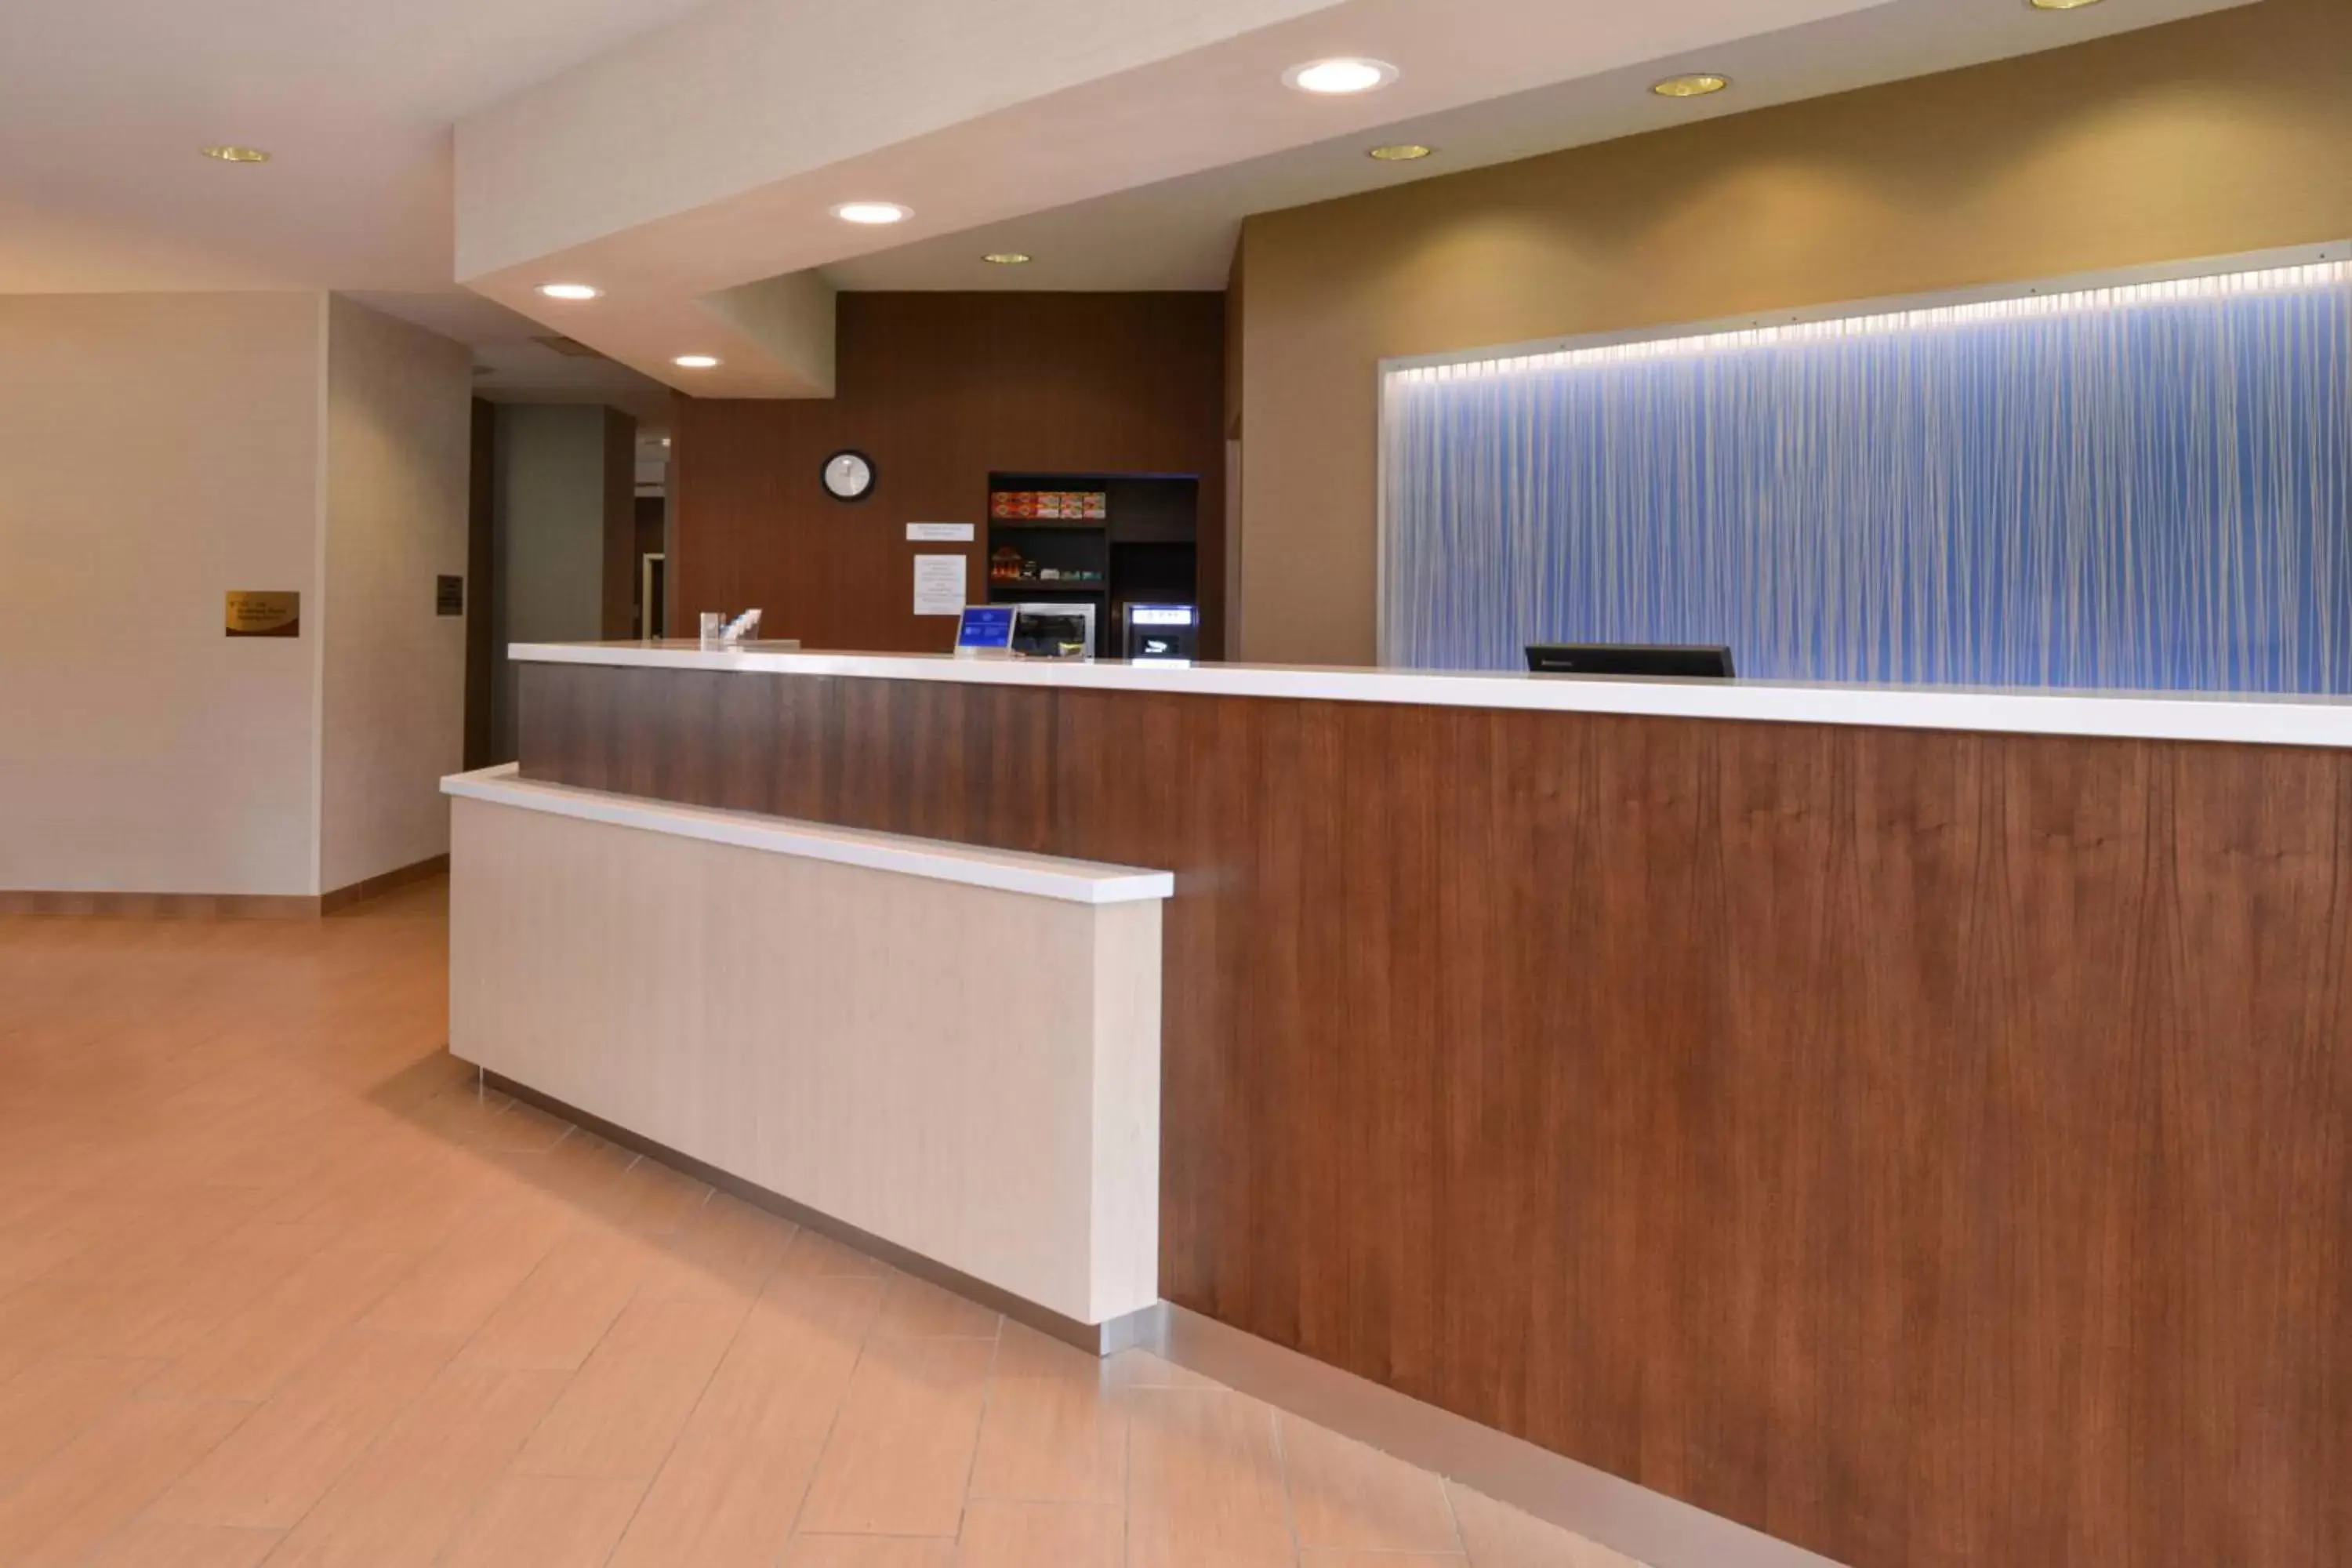 Lobby or reception, Lobby/Reception in Fairfield Inn Orlando Airport